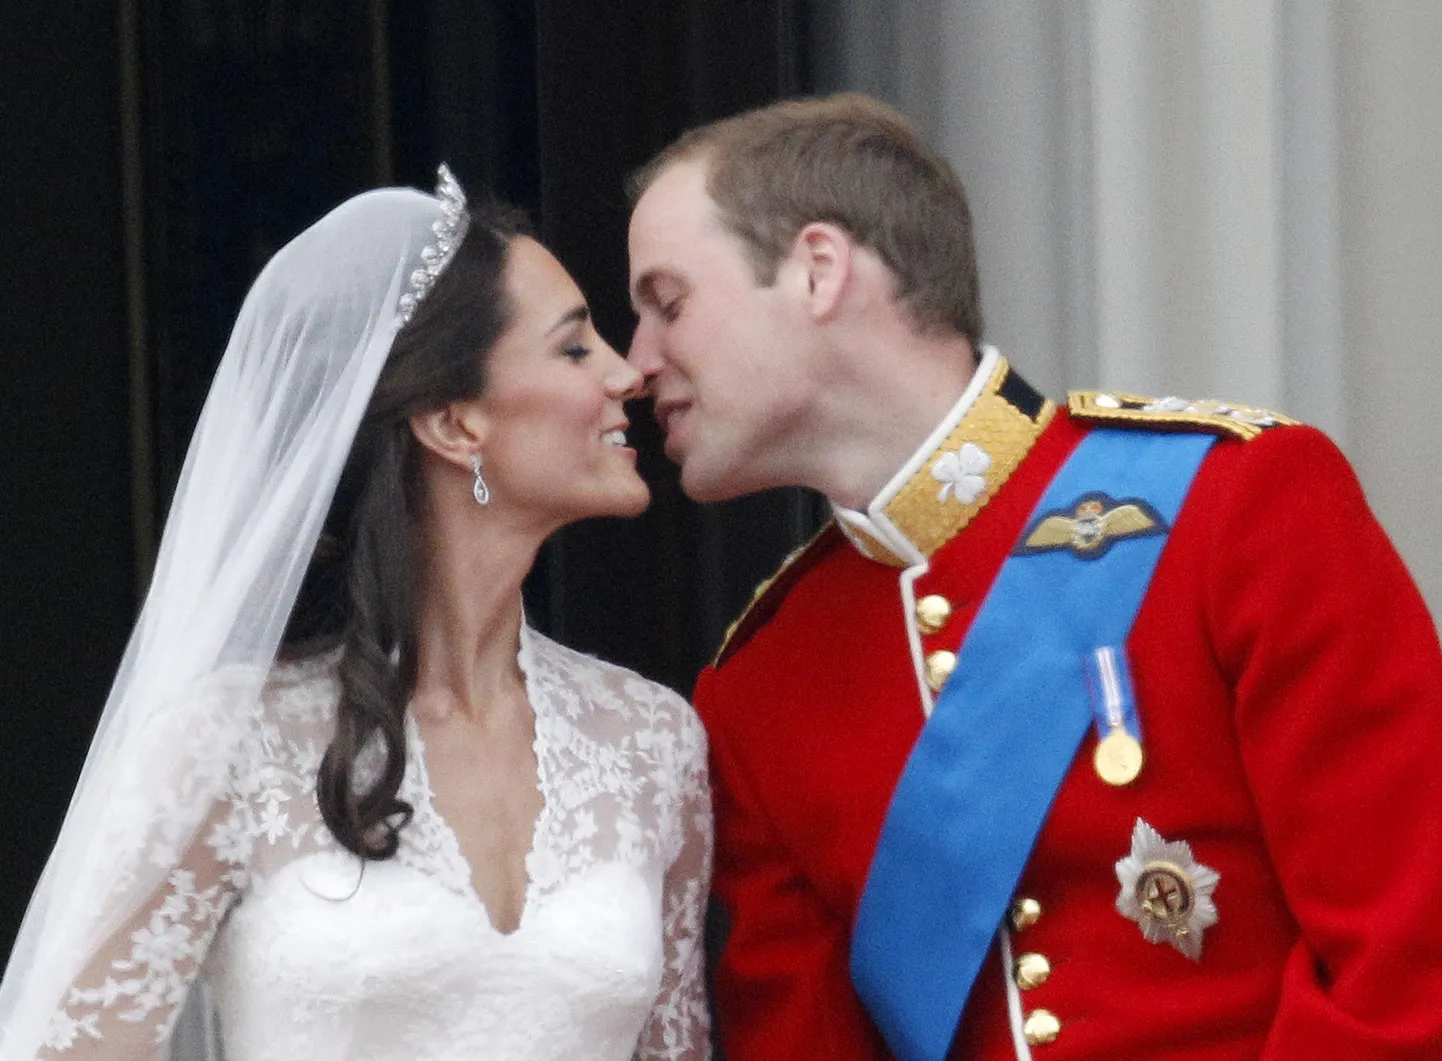 Ühendkuningriigi prints Williami ja printsess Catherine'i pulmad 29. aprillil 2011. aastal.